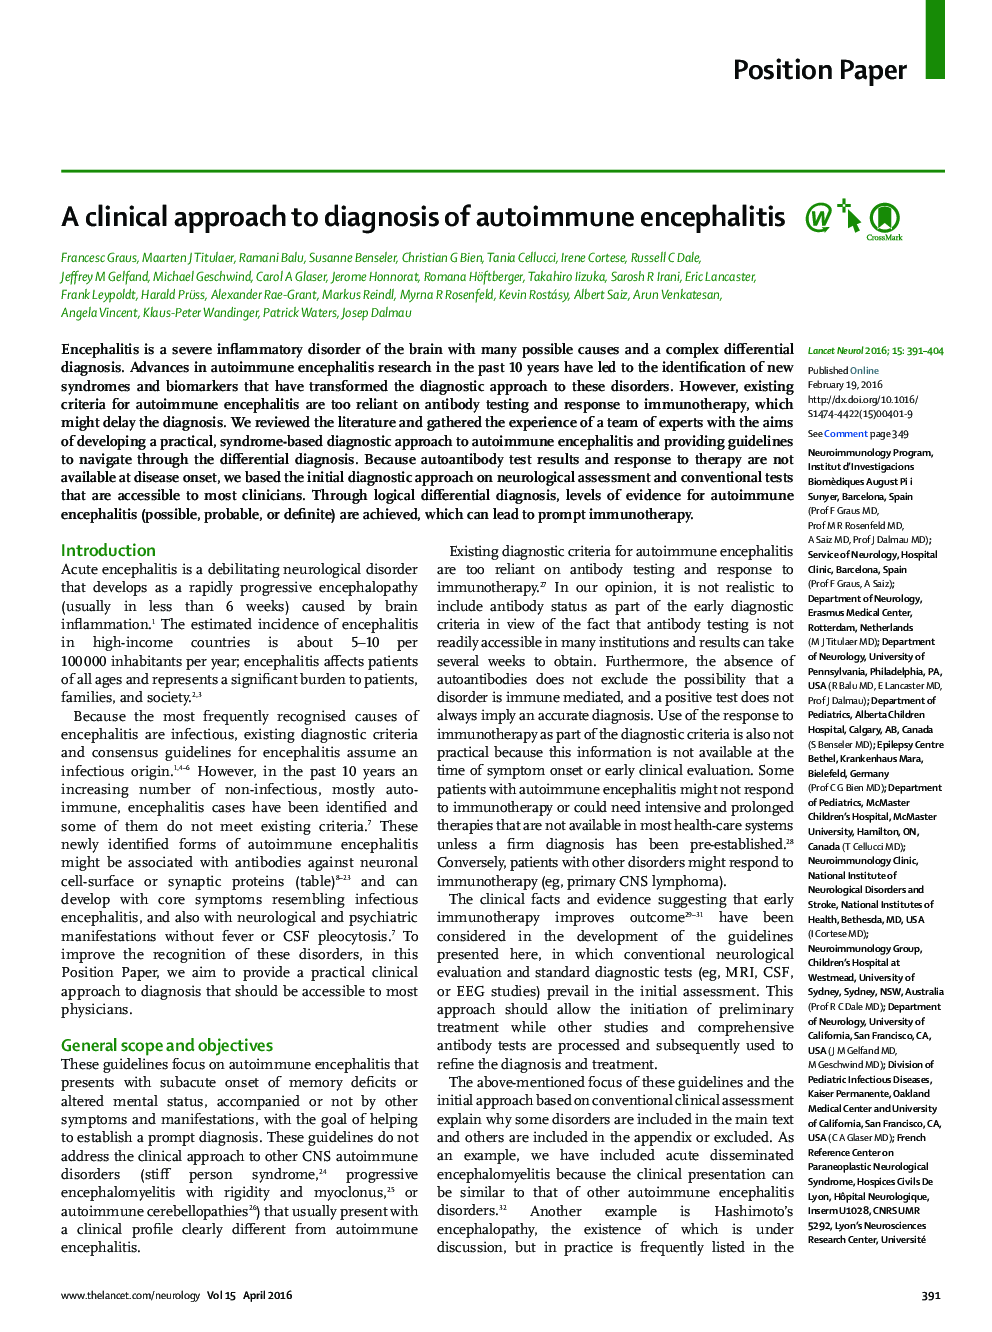 A clinical approach to diagnosis of autoimmune encephalitis